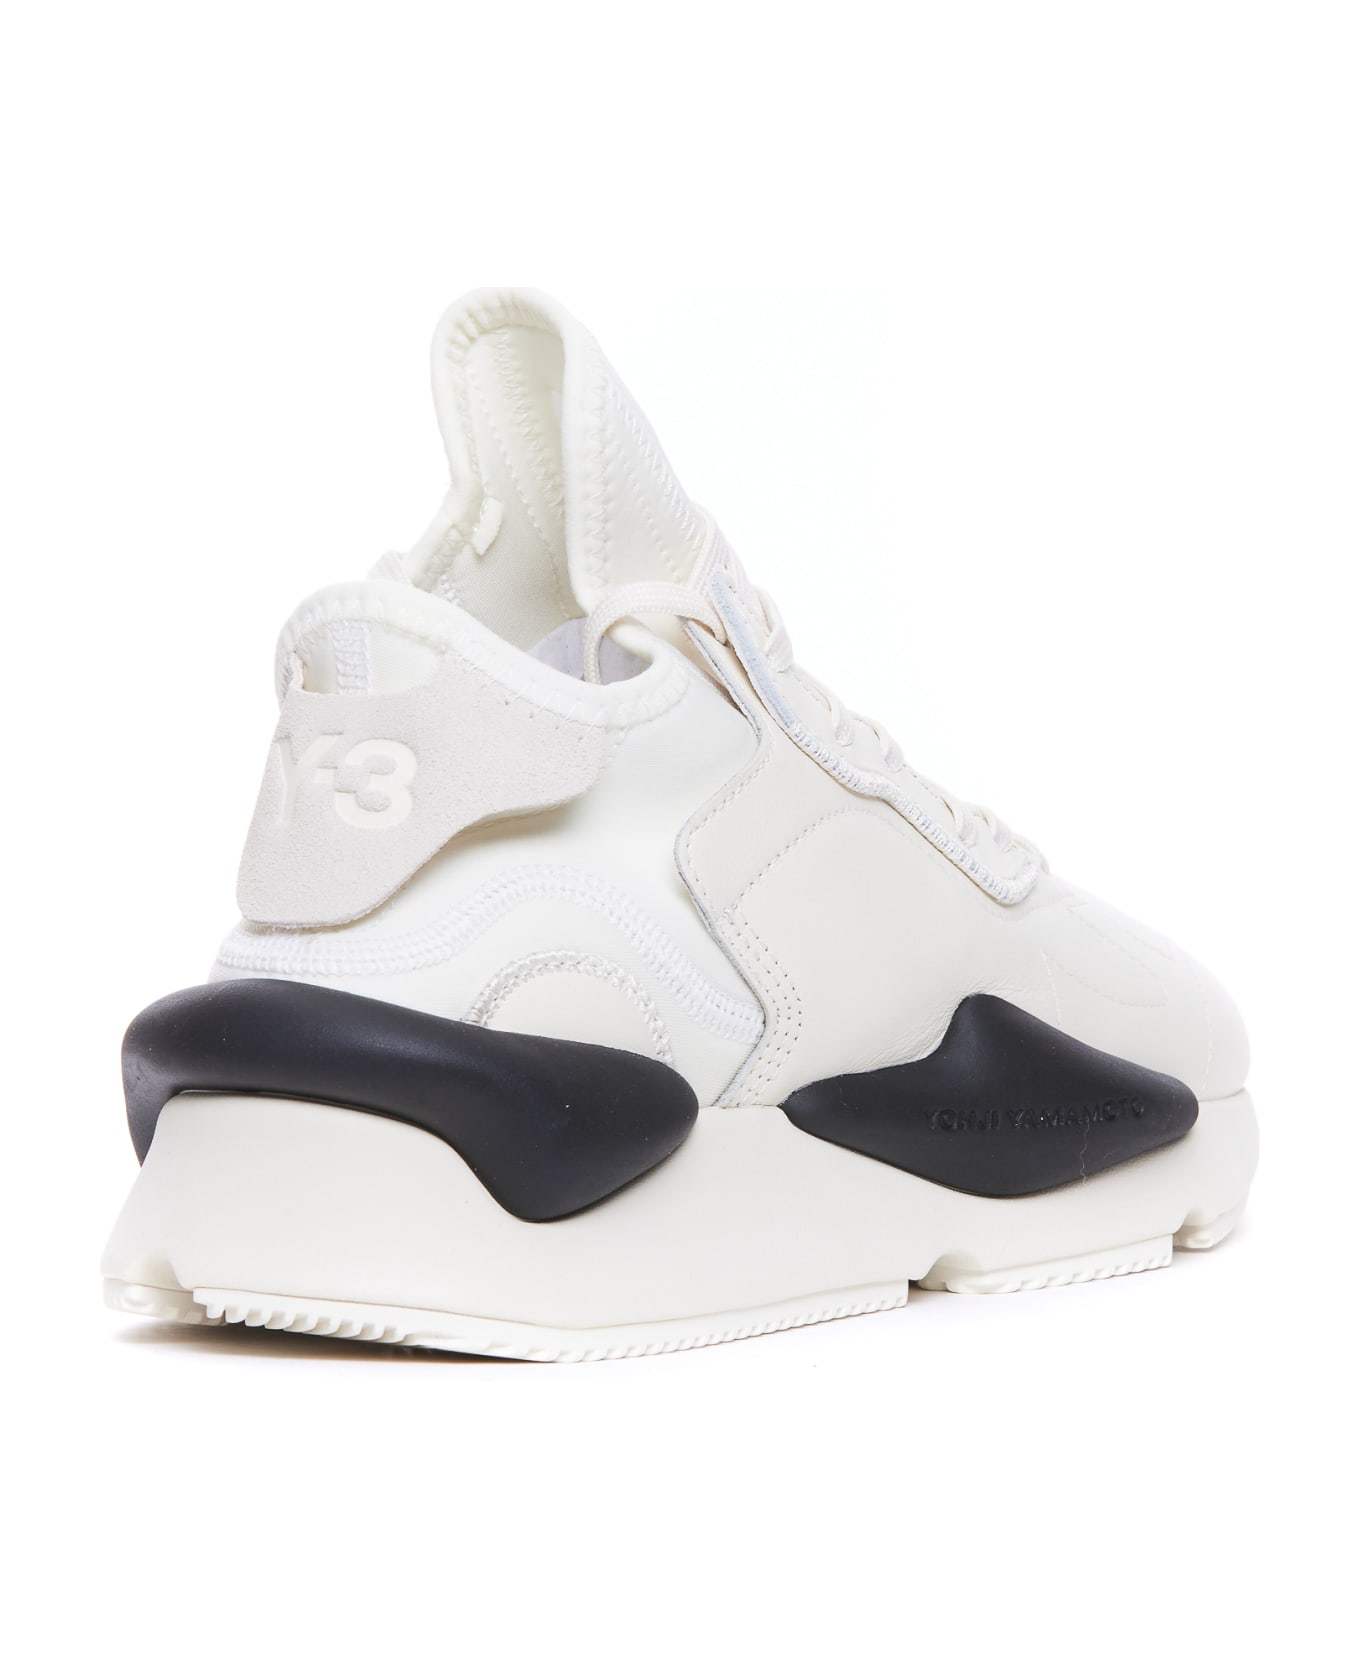 Y-3 Kaiwa Sneakers - White